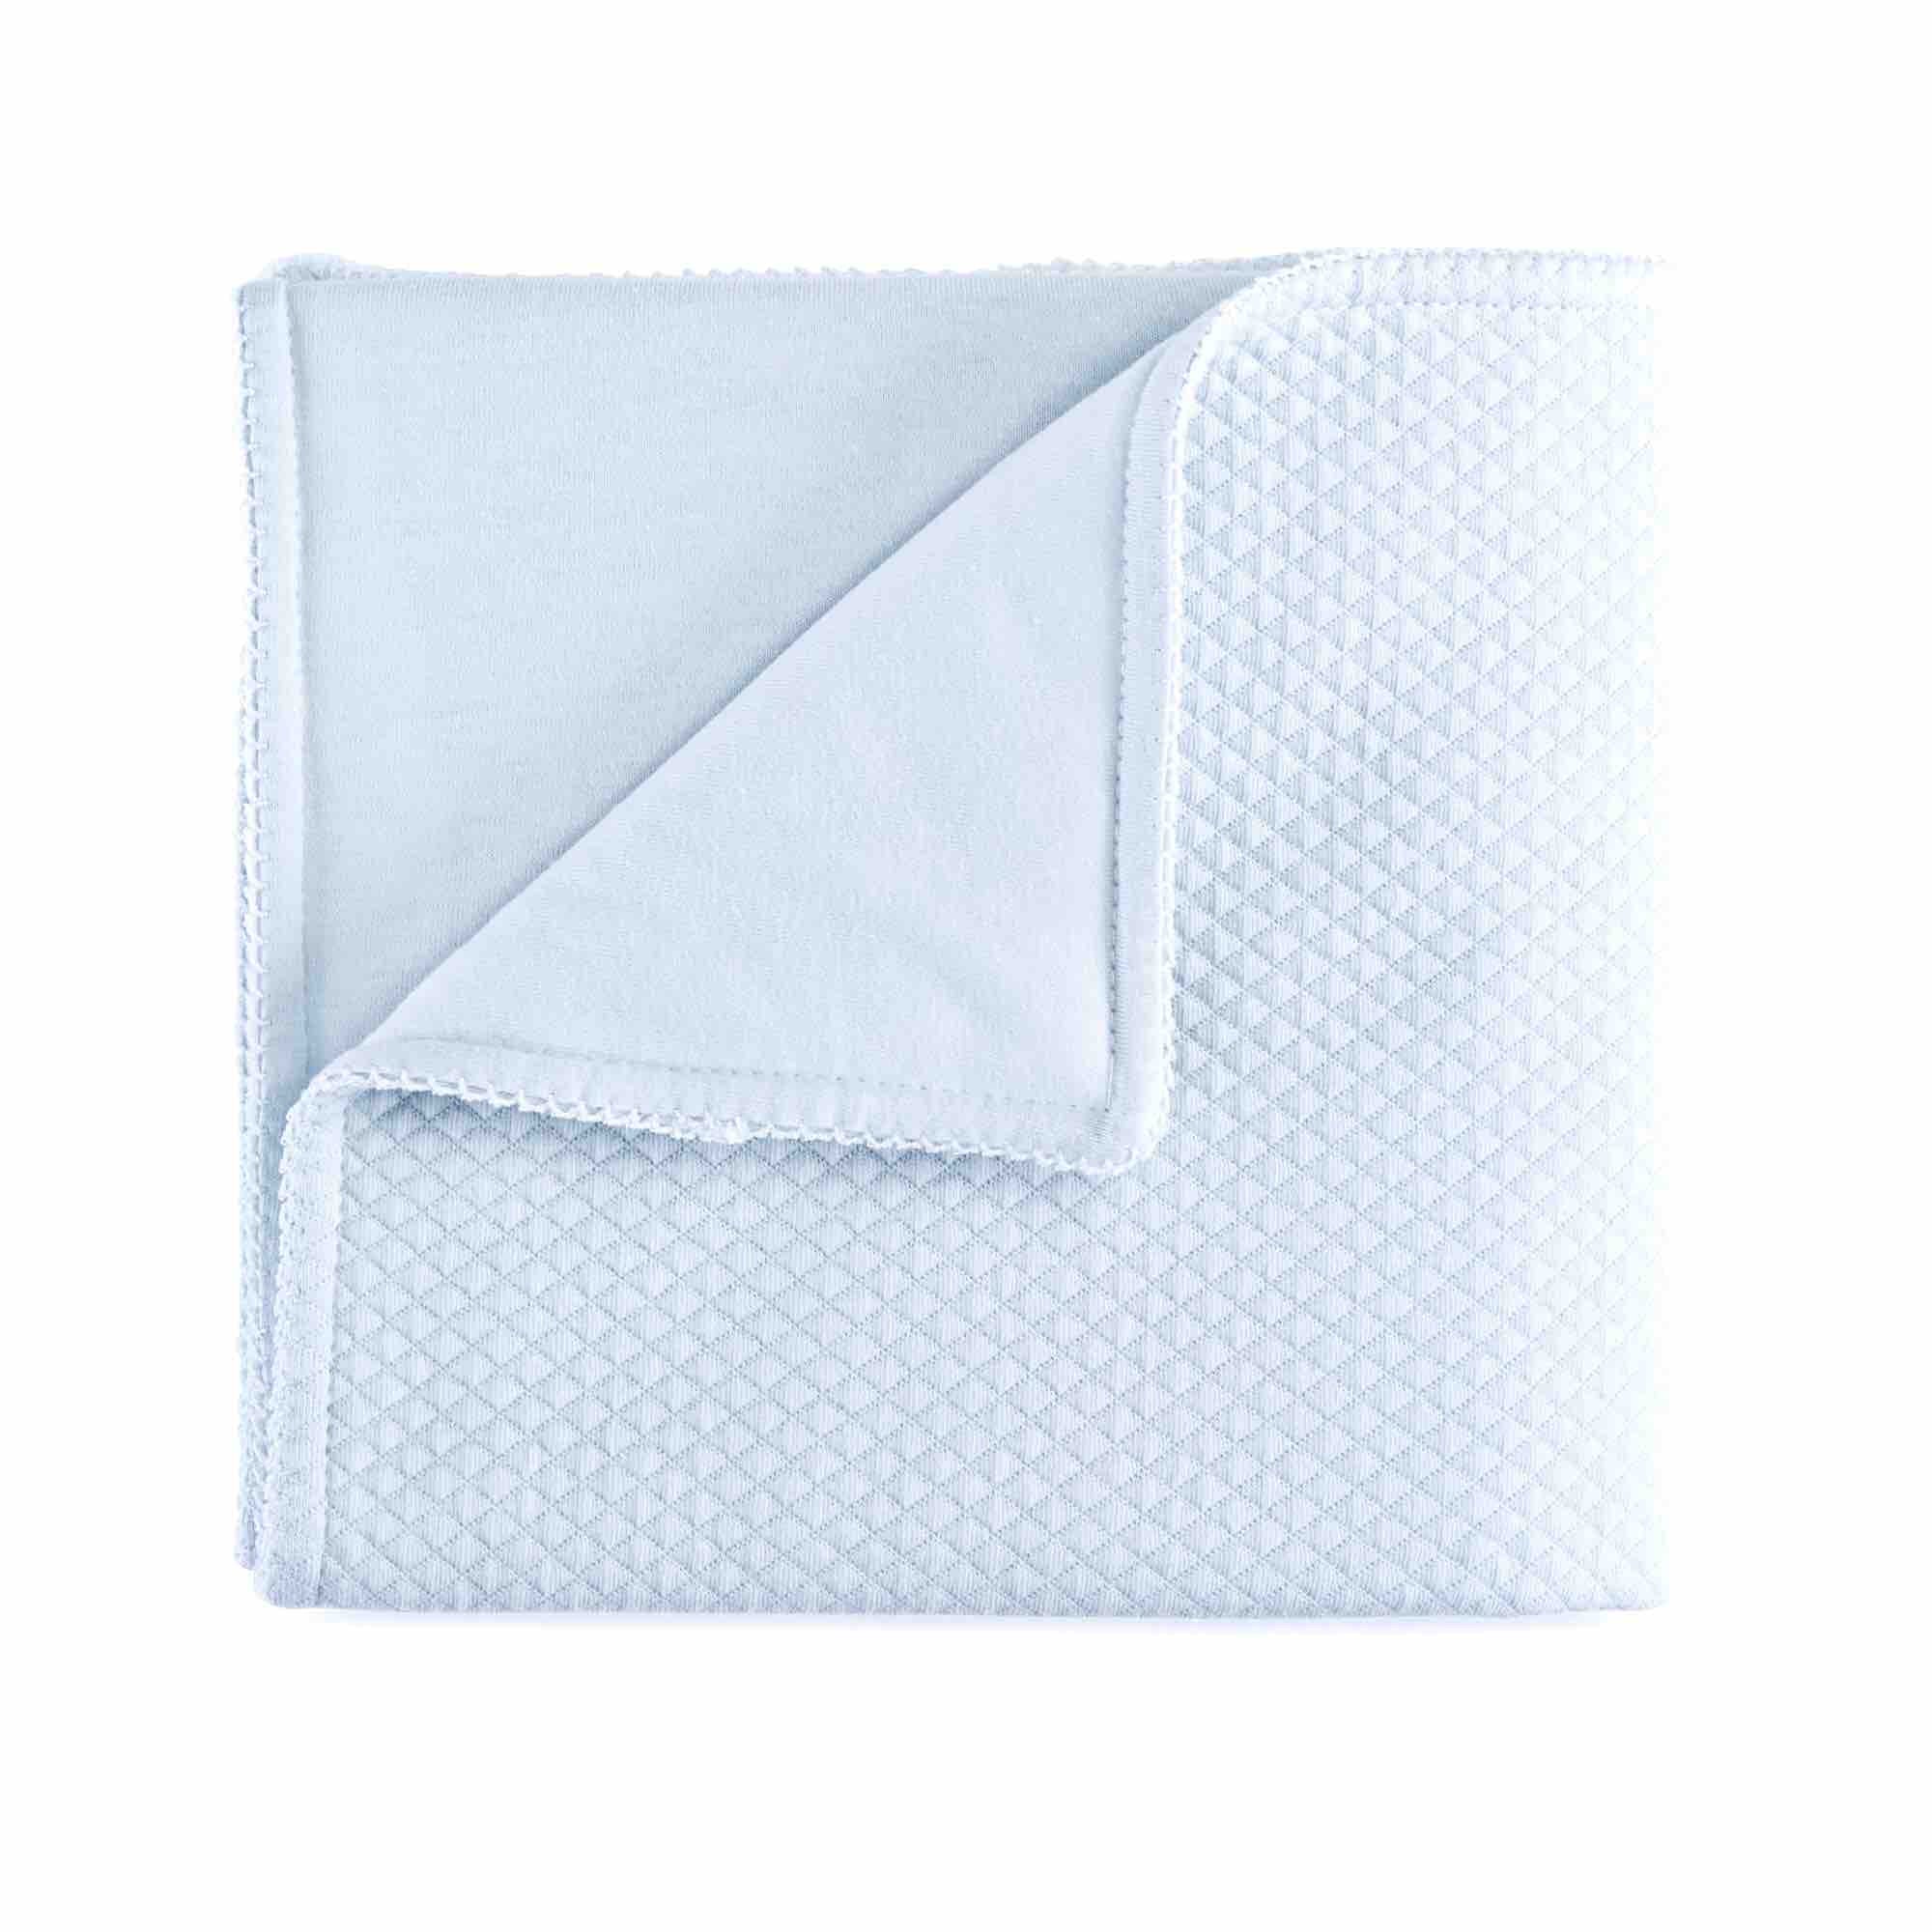 Theophile & Patachou Cradle Blanket (shawl) - Royal Blue